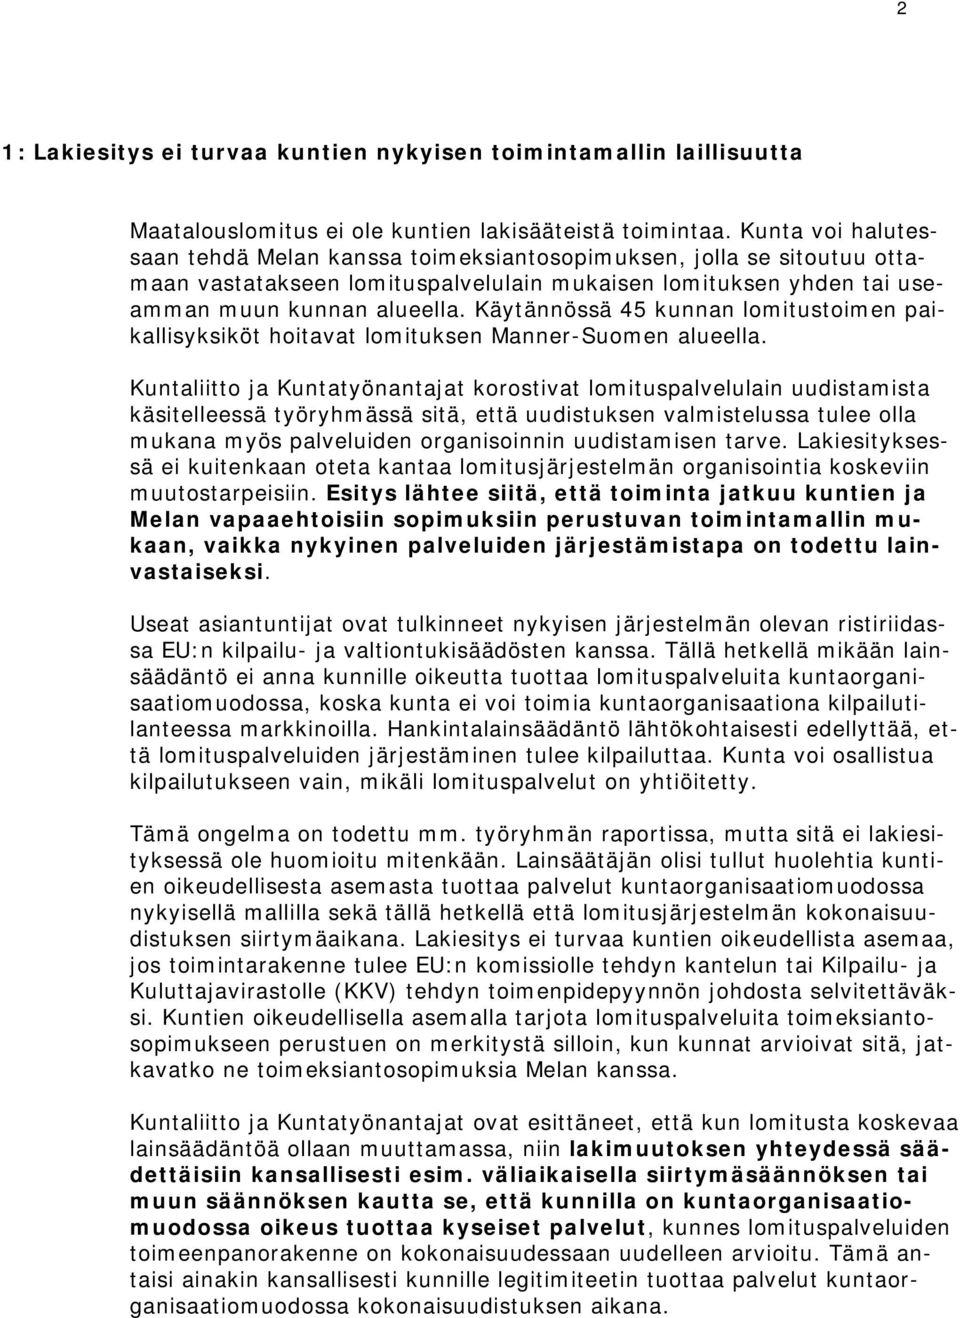 Käytännössä 45 kunnan lomitustoimen paikallisyksiköt hoitavat lomituksen Manner-Suomen alueella.